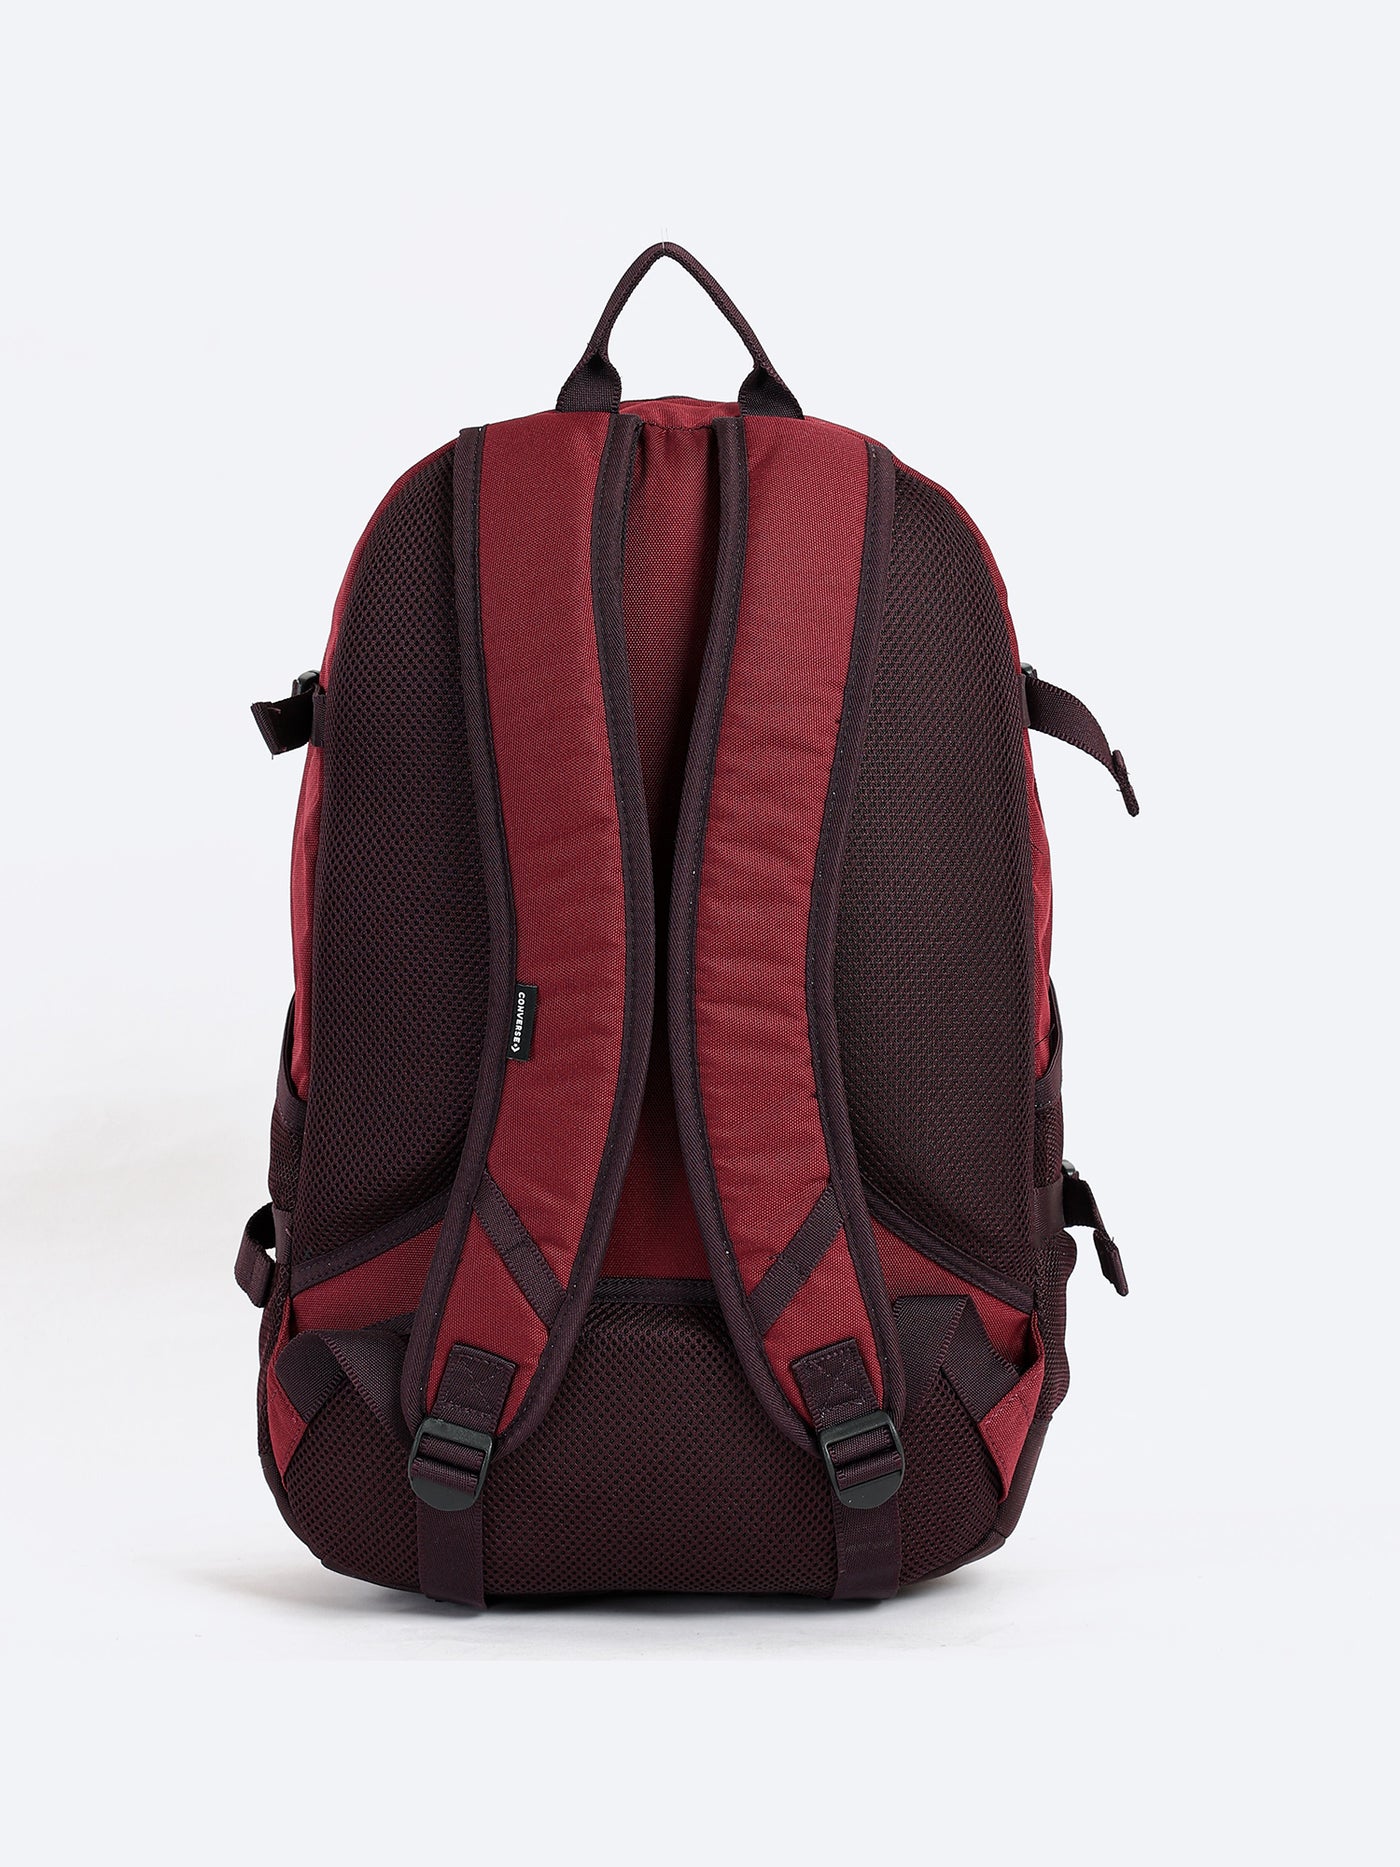 Unisex Backpack - Go 2 - Straight Edge